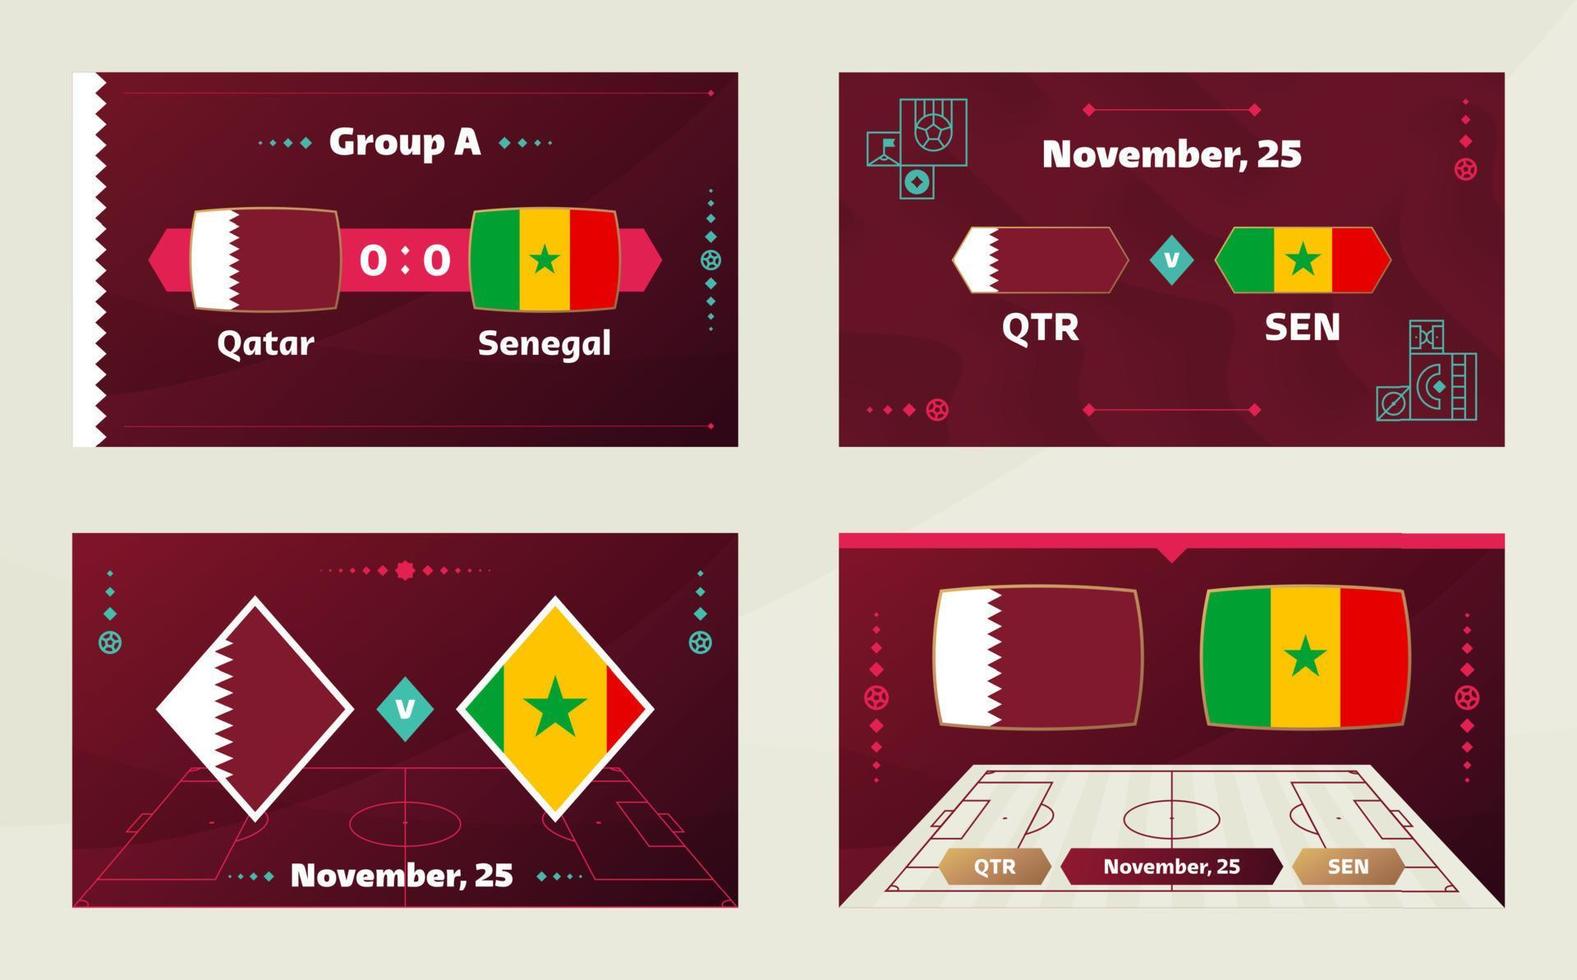 qatar vs senegal, fútbol 2022, grupo a. partido de campeonato mundial de fútbol versus antecedentes deportivos de introducción de equipos, afiche final de la competencia de campeonato, ilustración vectorial. vector